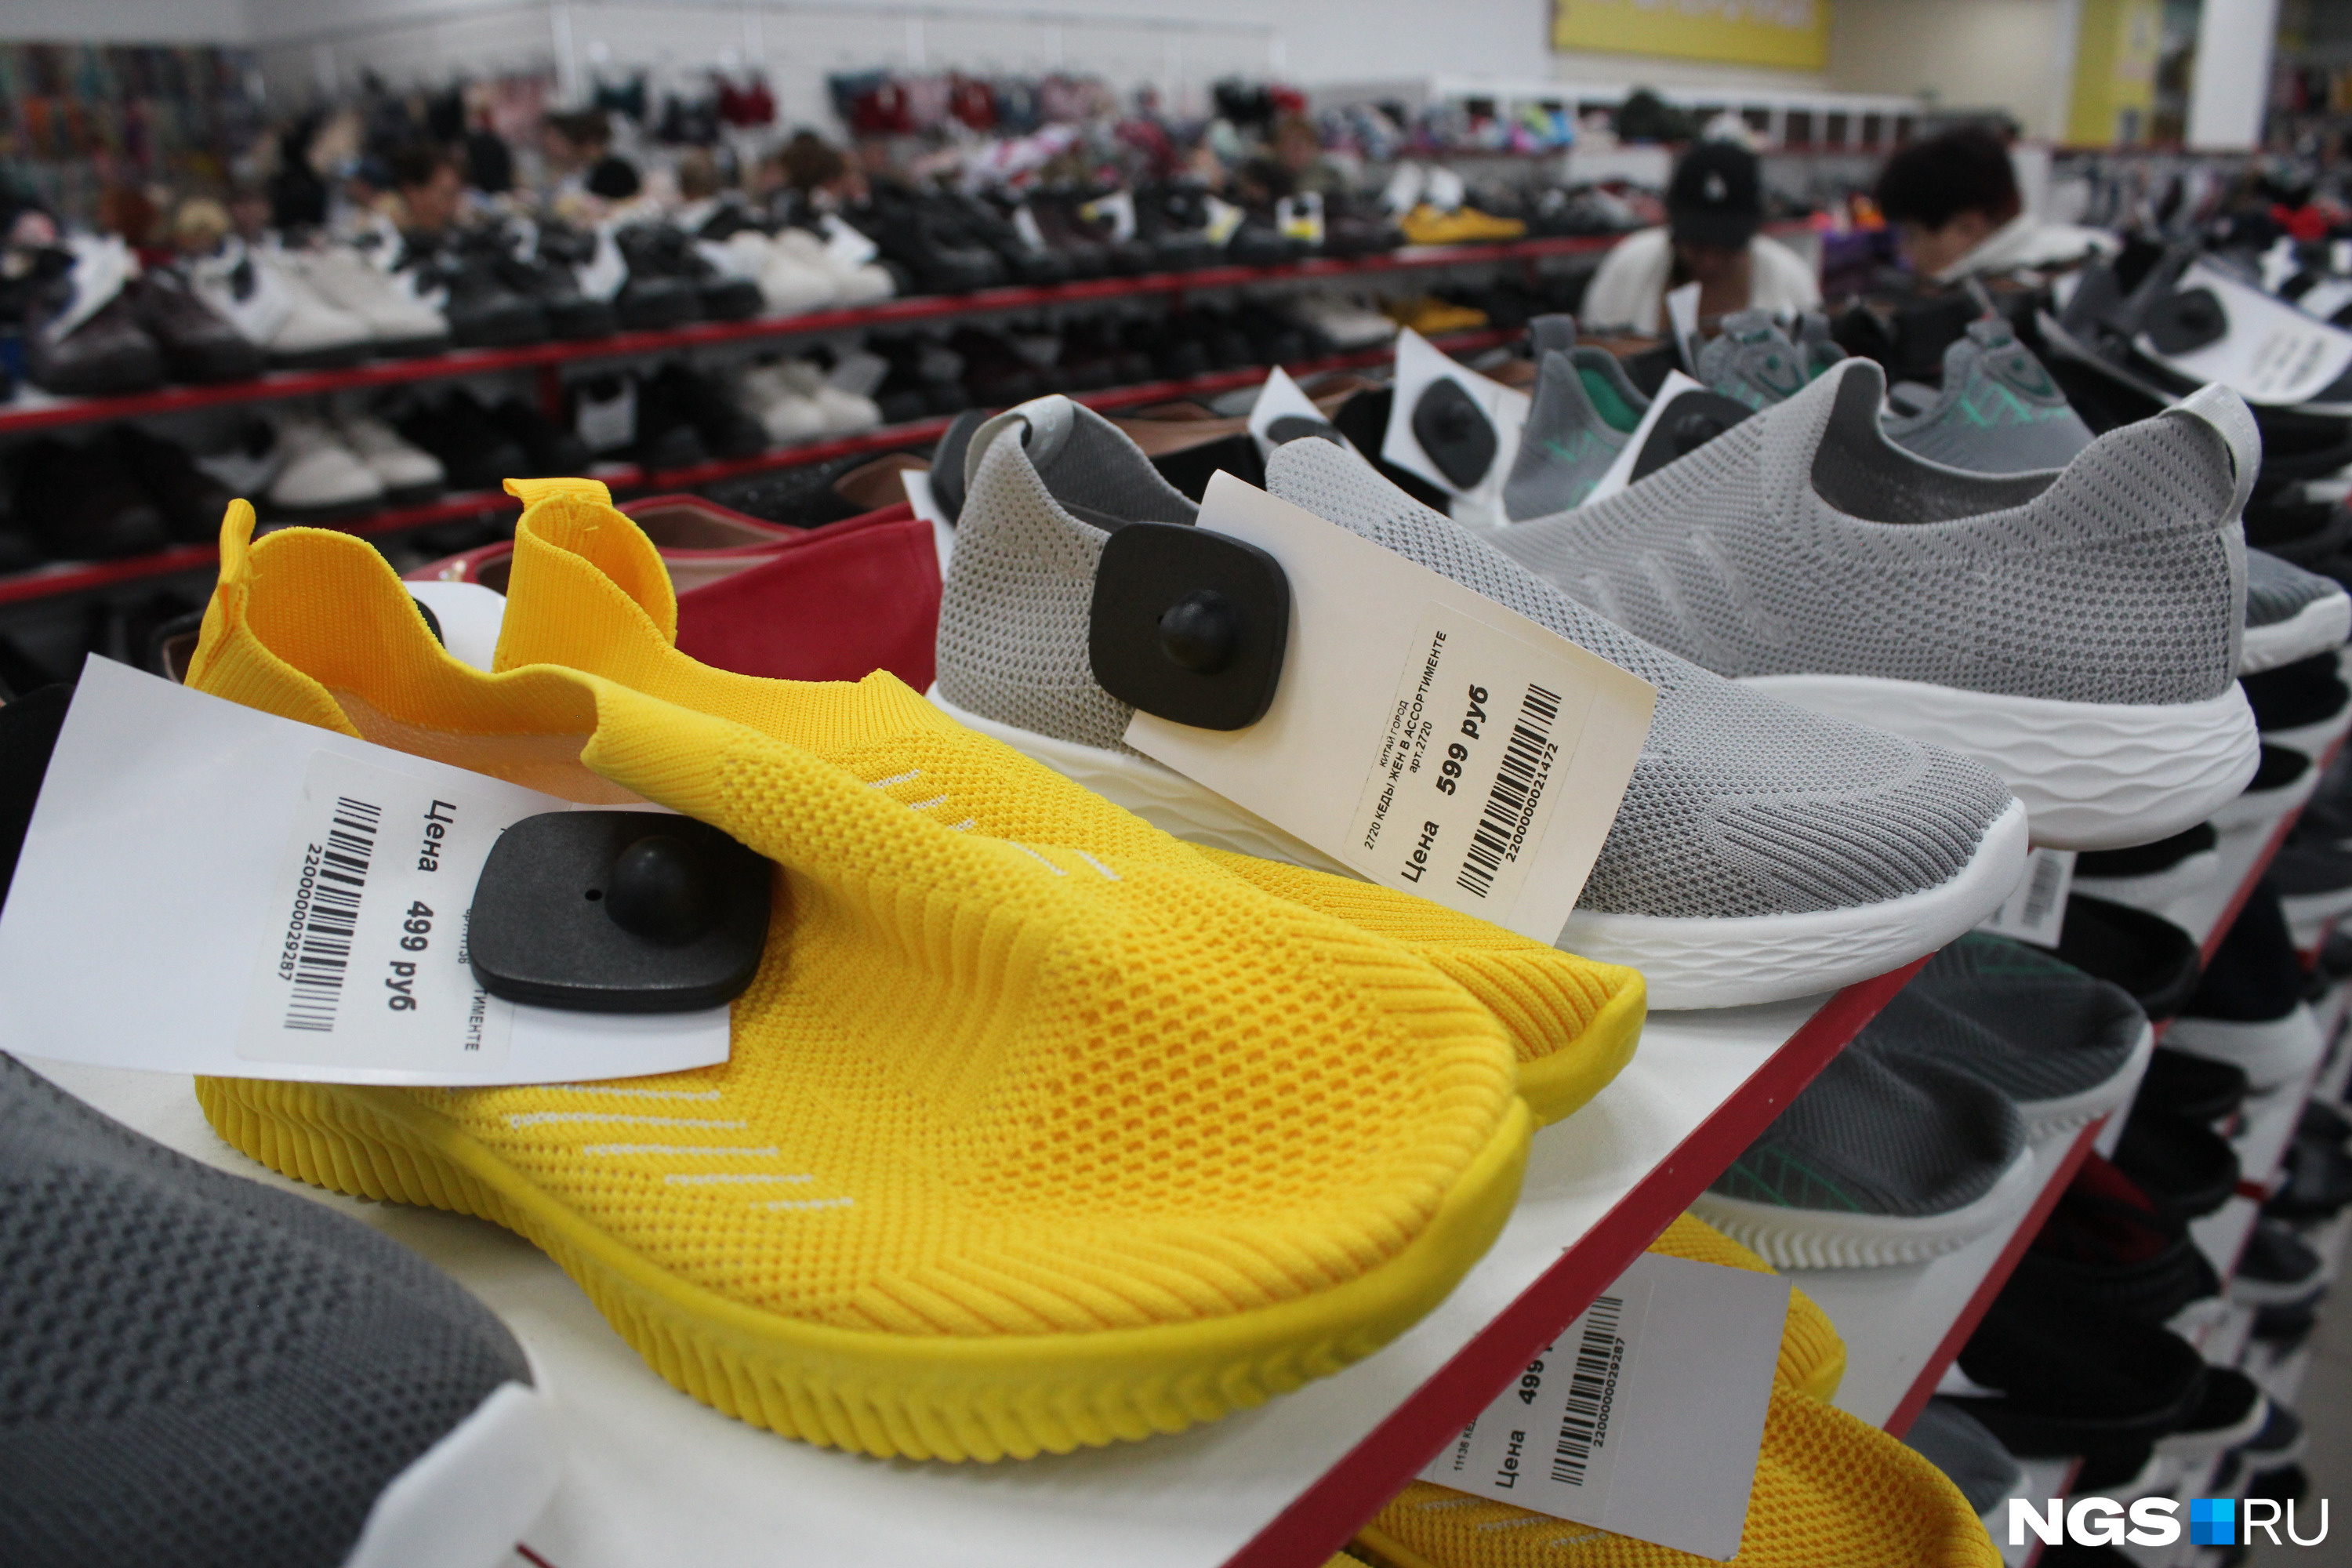 Самую недорогую обувь можно купить уже за 500 рублей